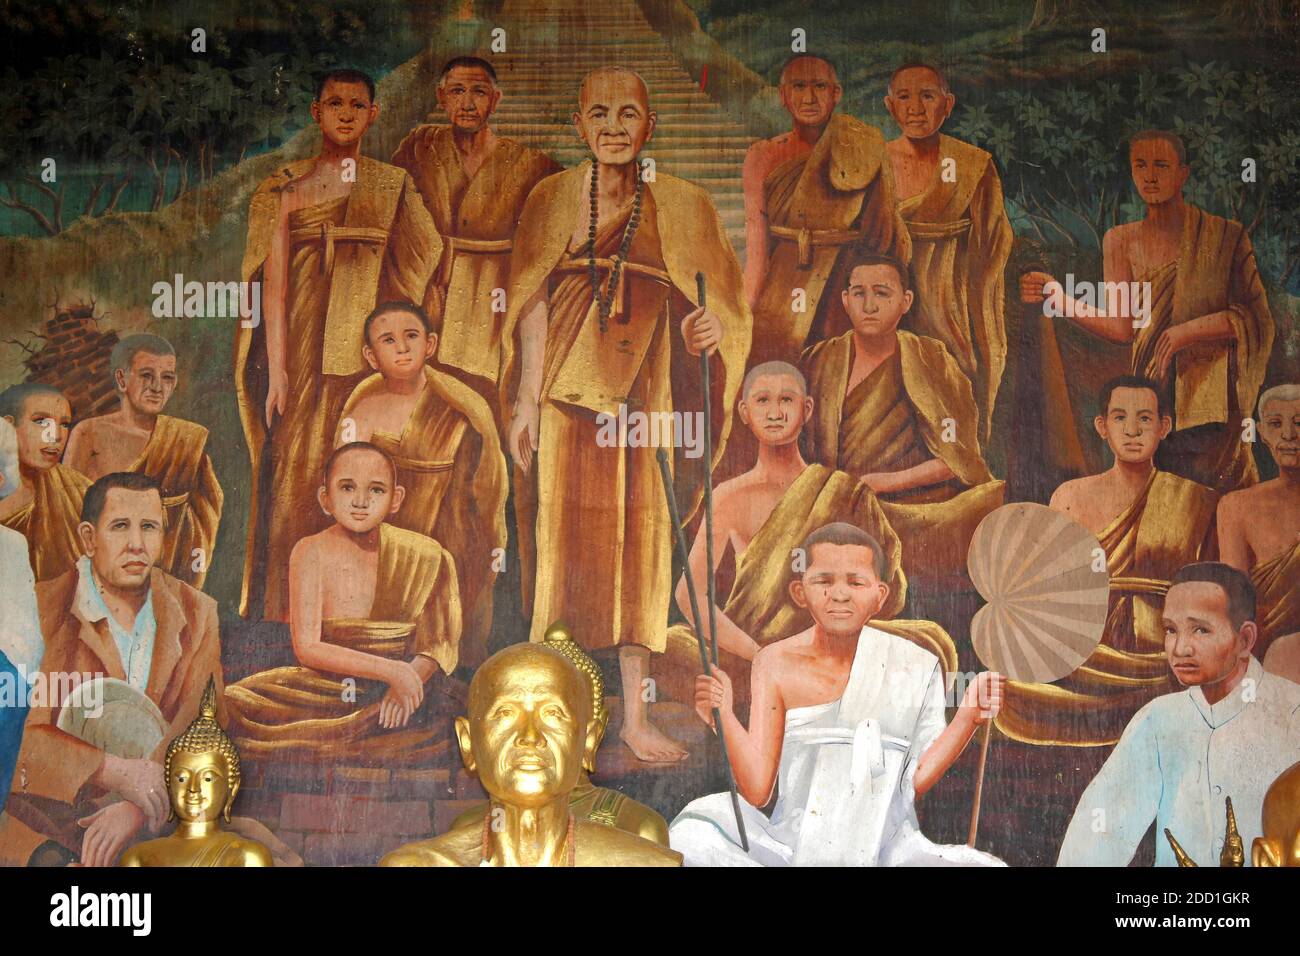 Monks bouddhistes peinture et sculptures au temple Wat Phra That Doi Suthep, Thaïlande Banque D'Images